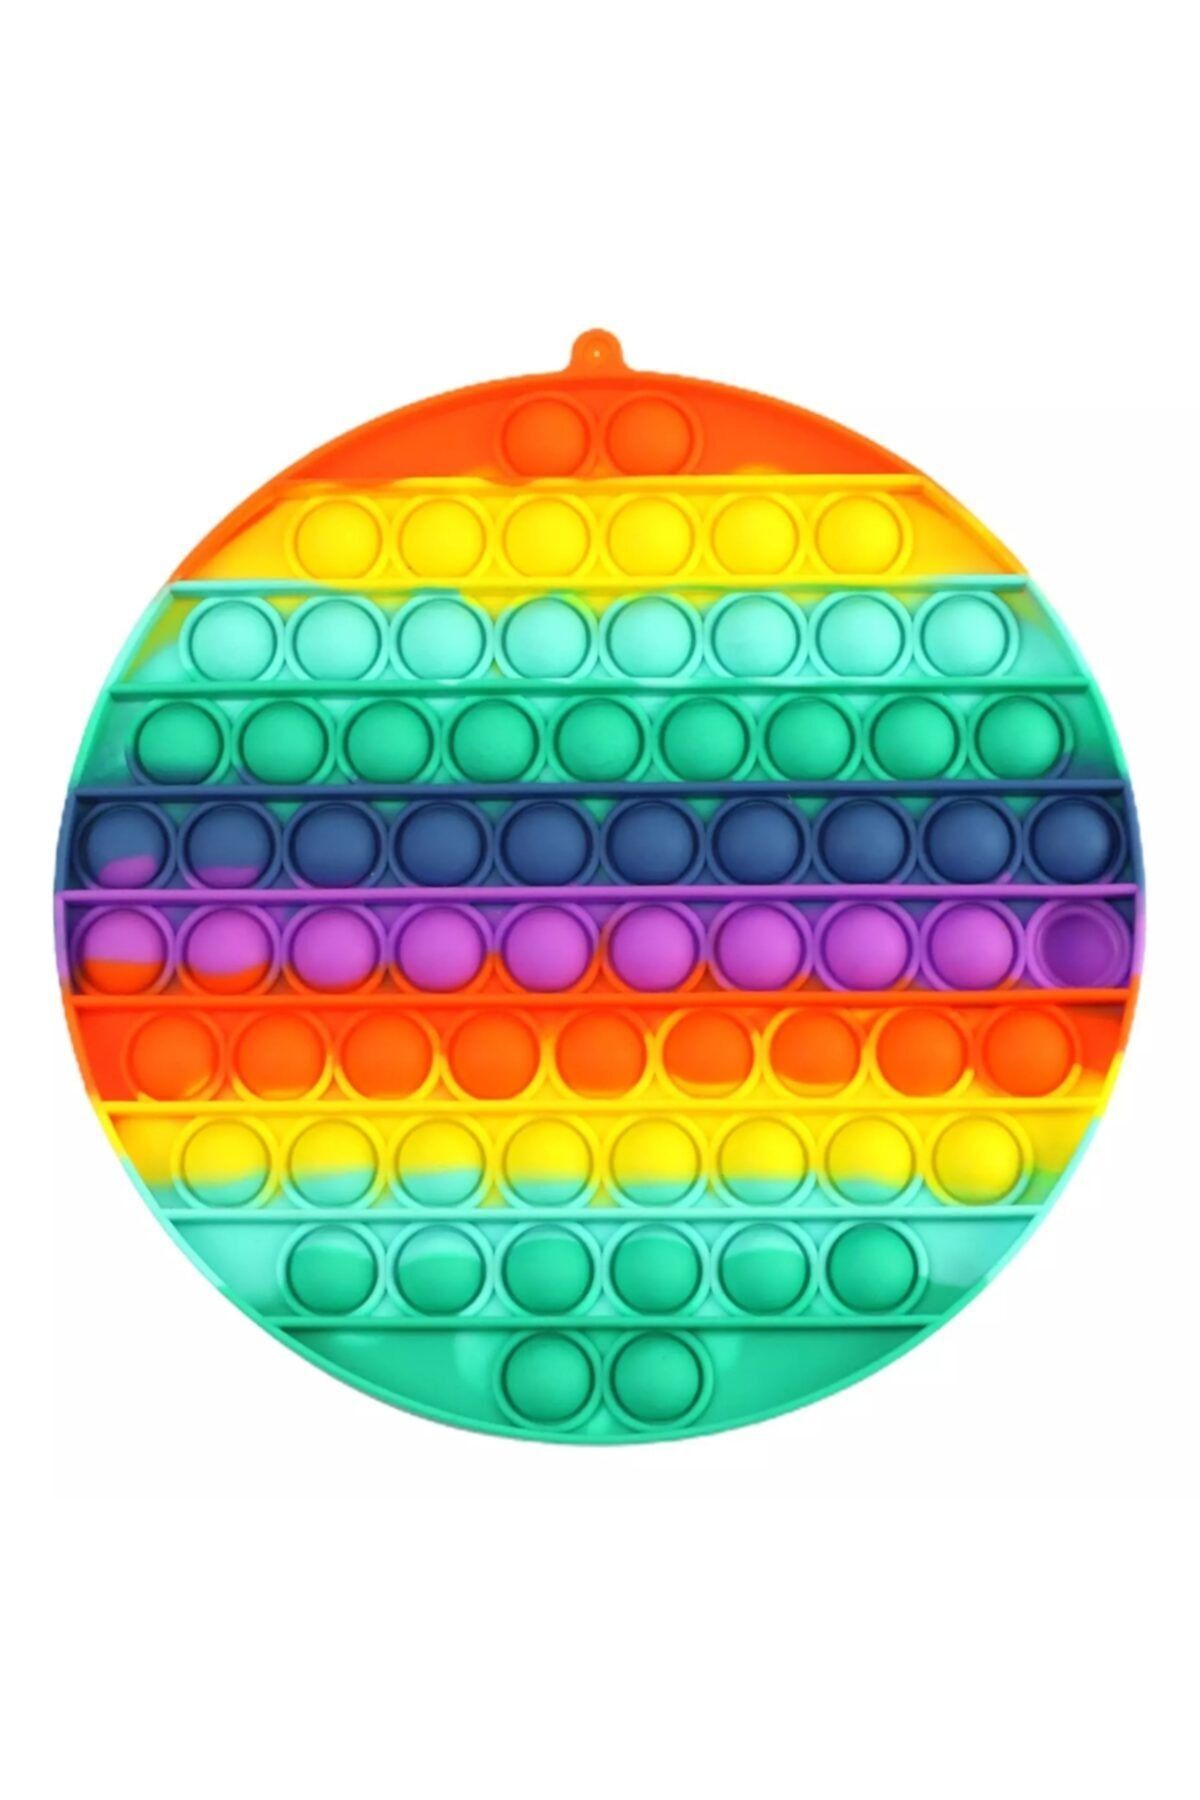 GÜVEN Push Bubble Gökkuşağı Renkli Büyük Boy Baloncuk Patlatma Oyunu 20 Cm